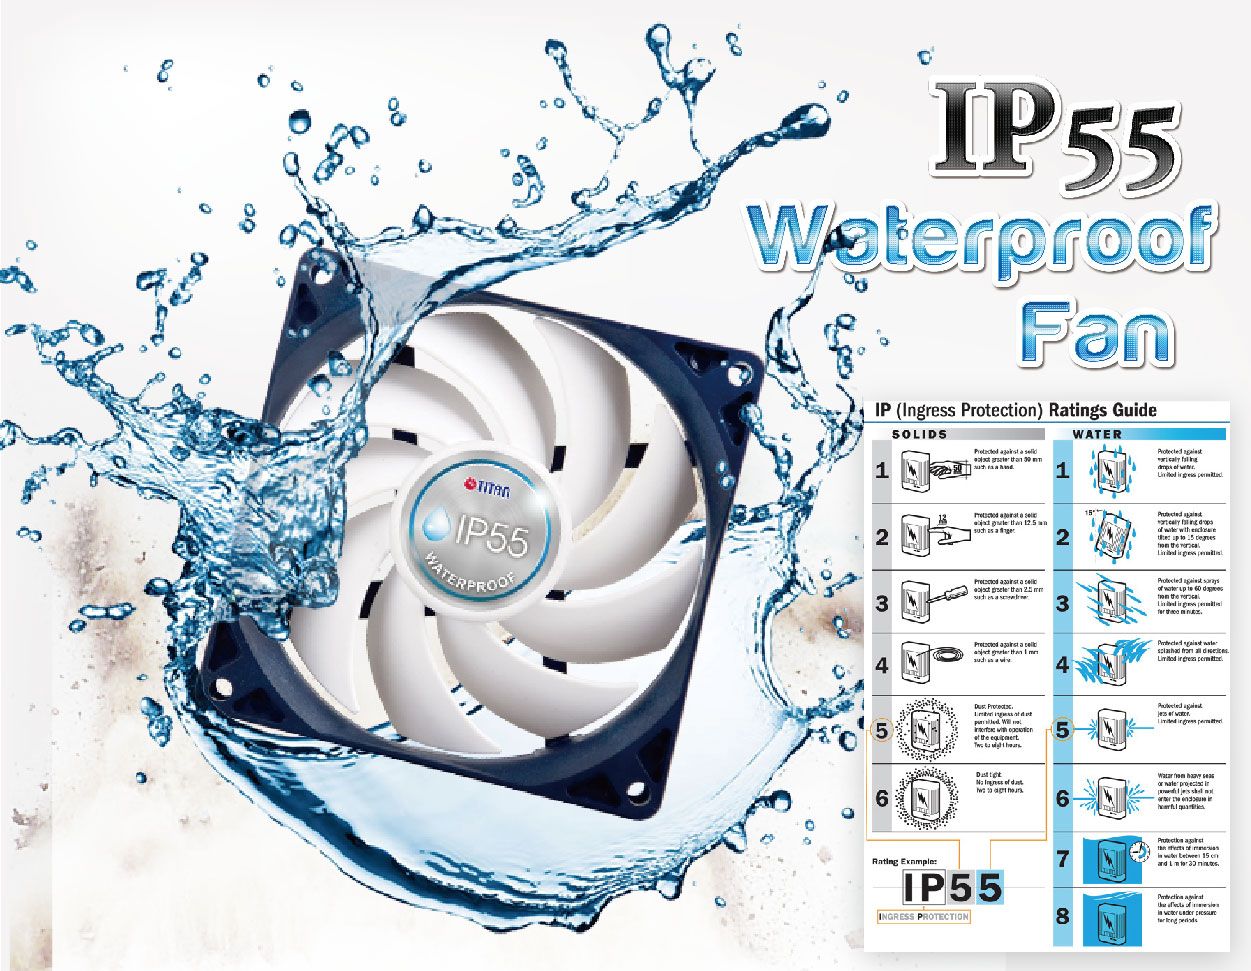 IP55 Waterproof fan is s the crucial feature of RV fan